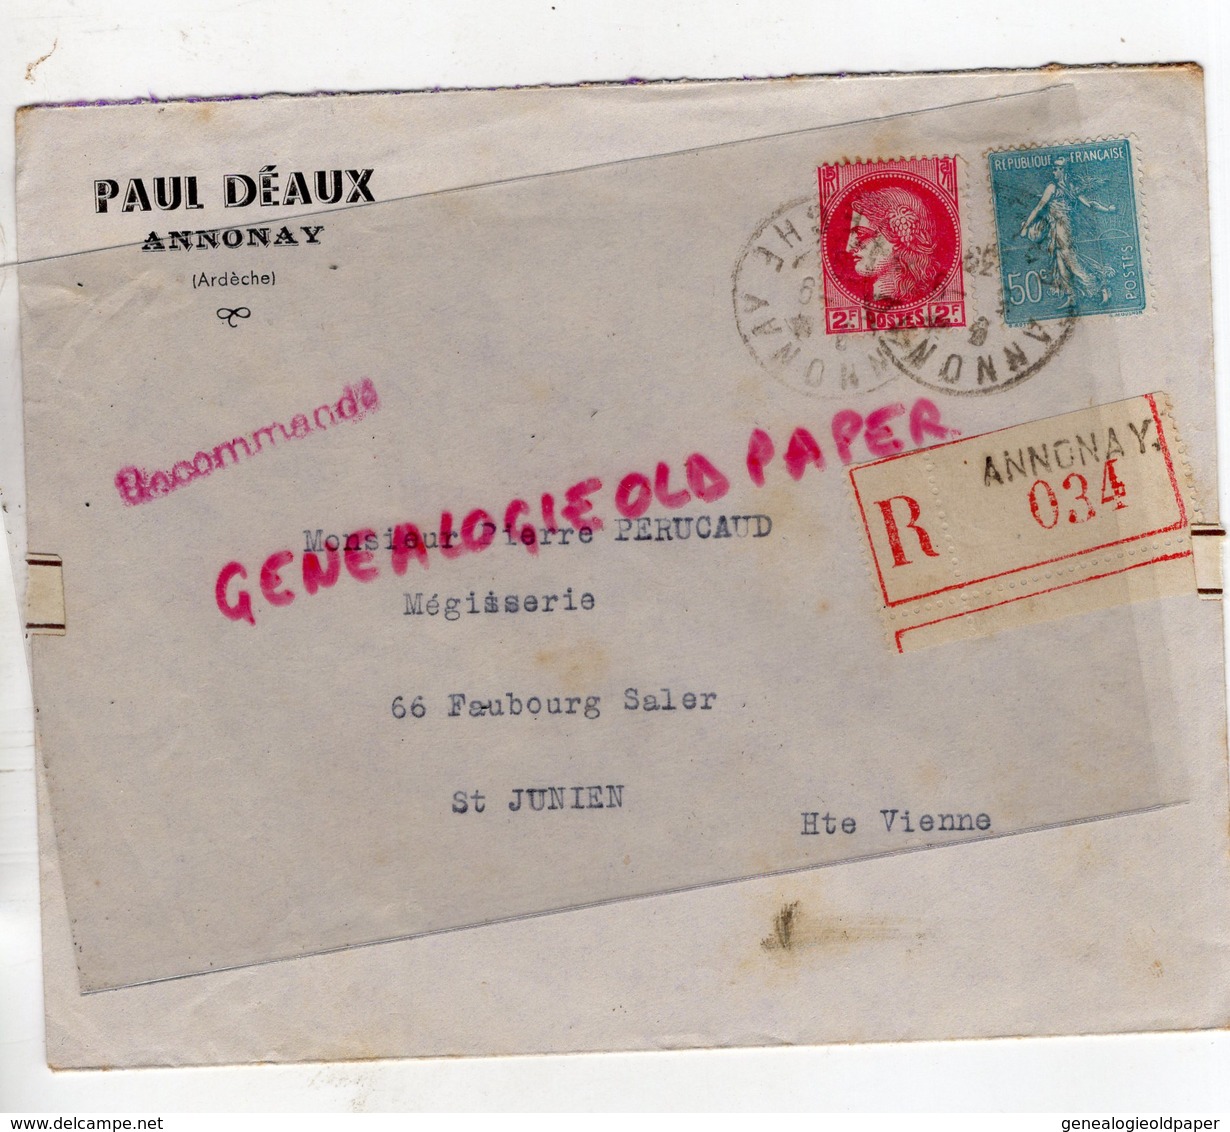 07- ANNONAY- ENVELOPPE RECOMMANDEE 034- 1939- PAUL DEAUX- PIERRE PERUCAUD MEGISSERIE SAINT JUNIEN - Guerre De 1939-45